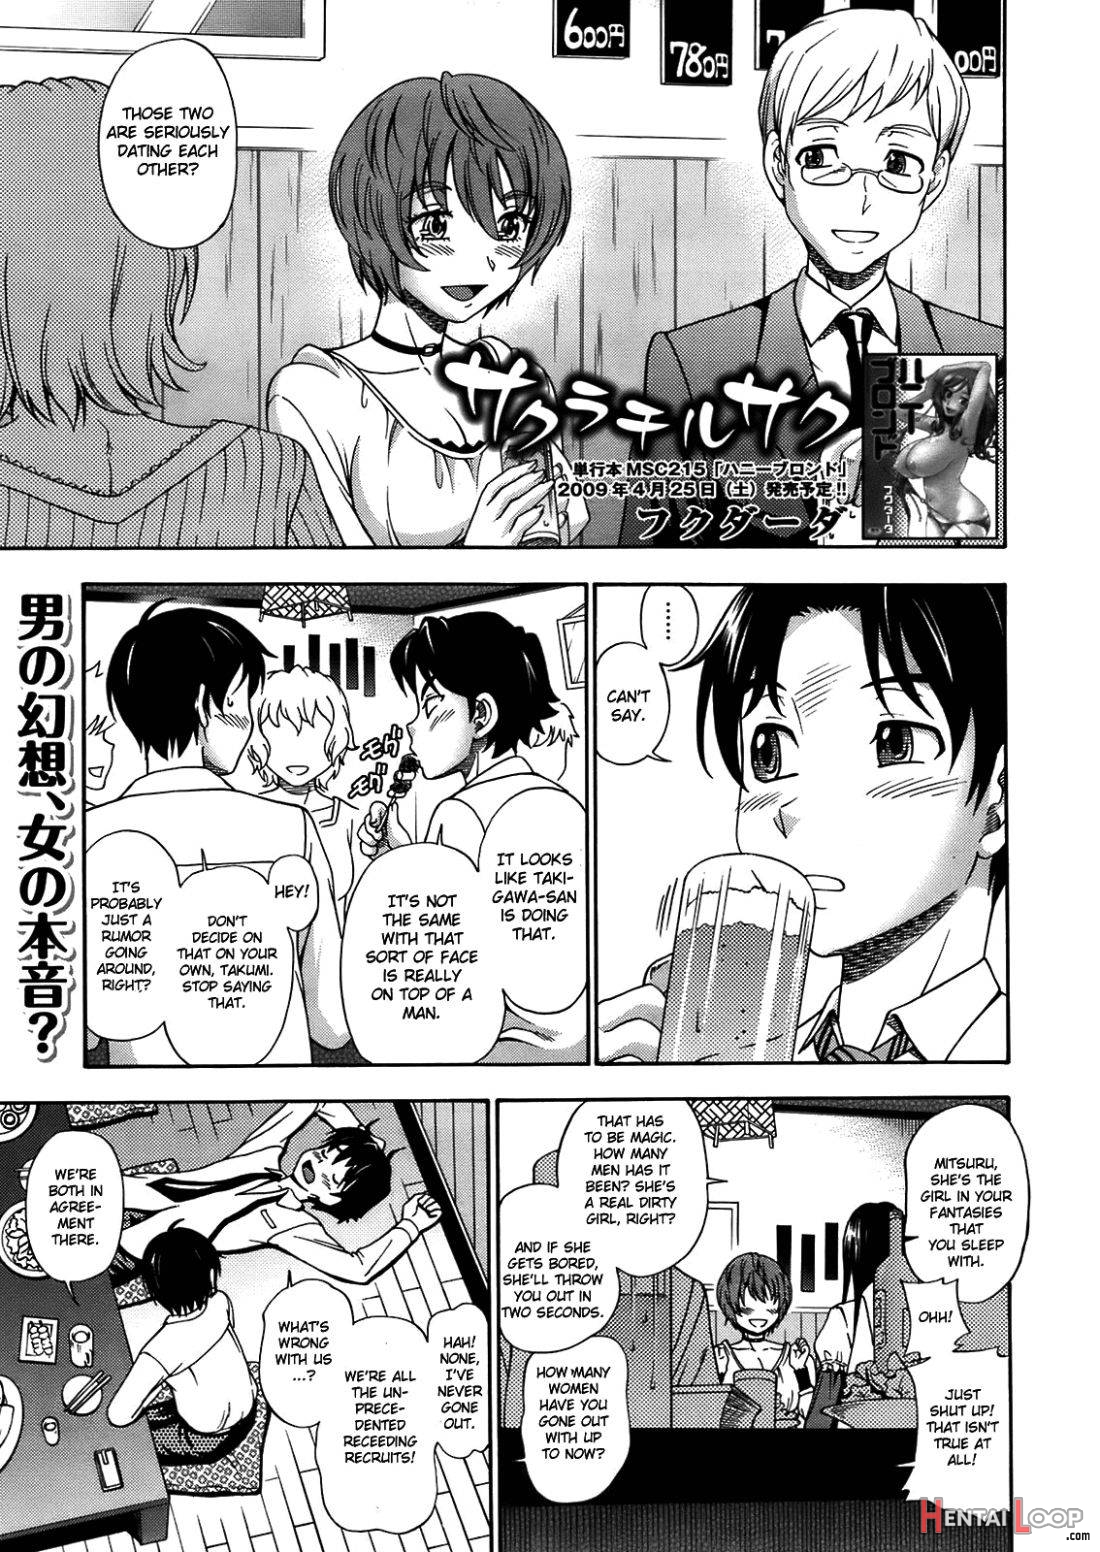 Sakura Chiru Saku page 1